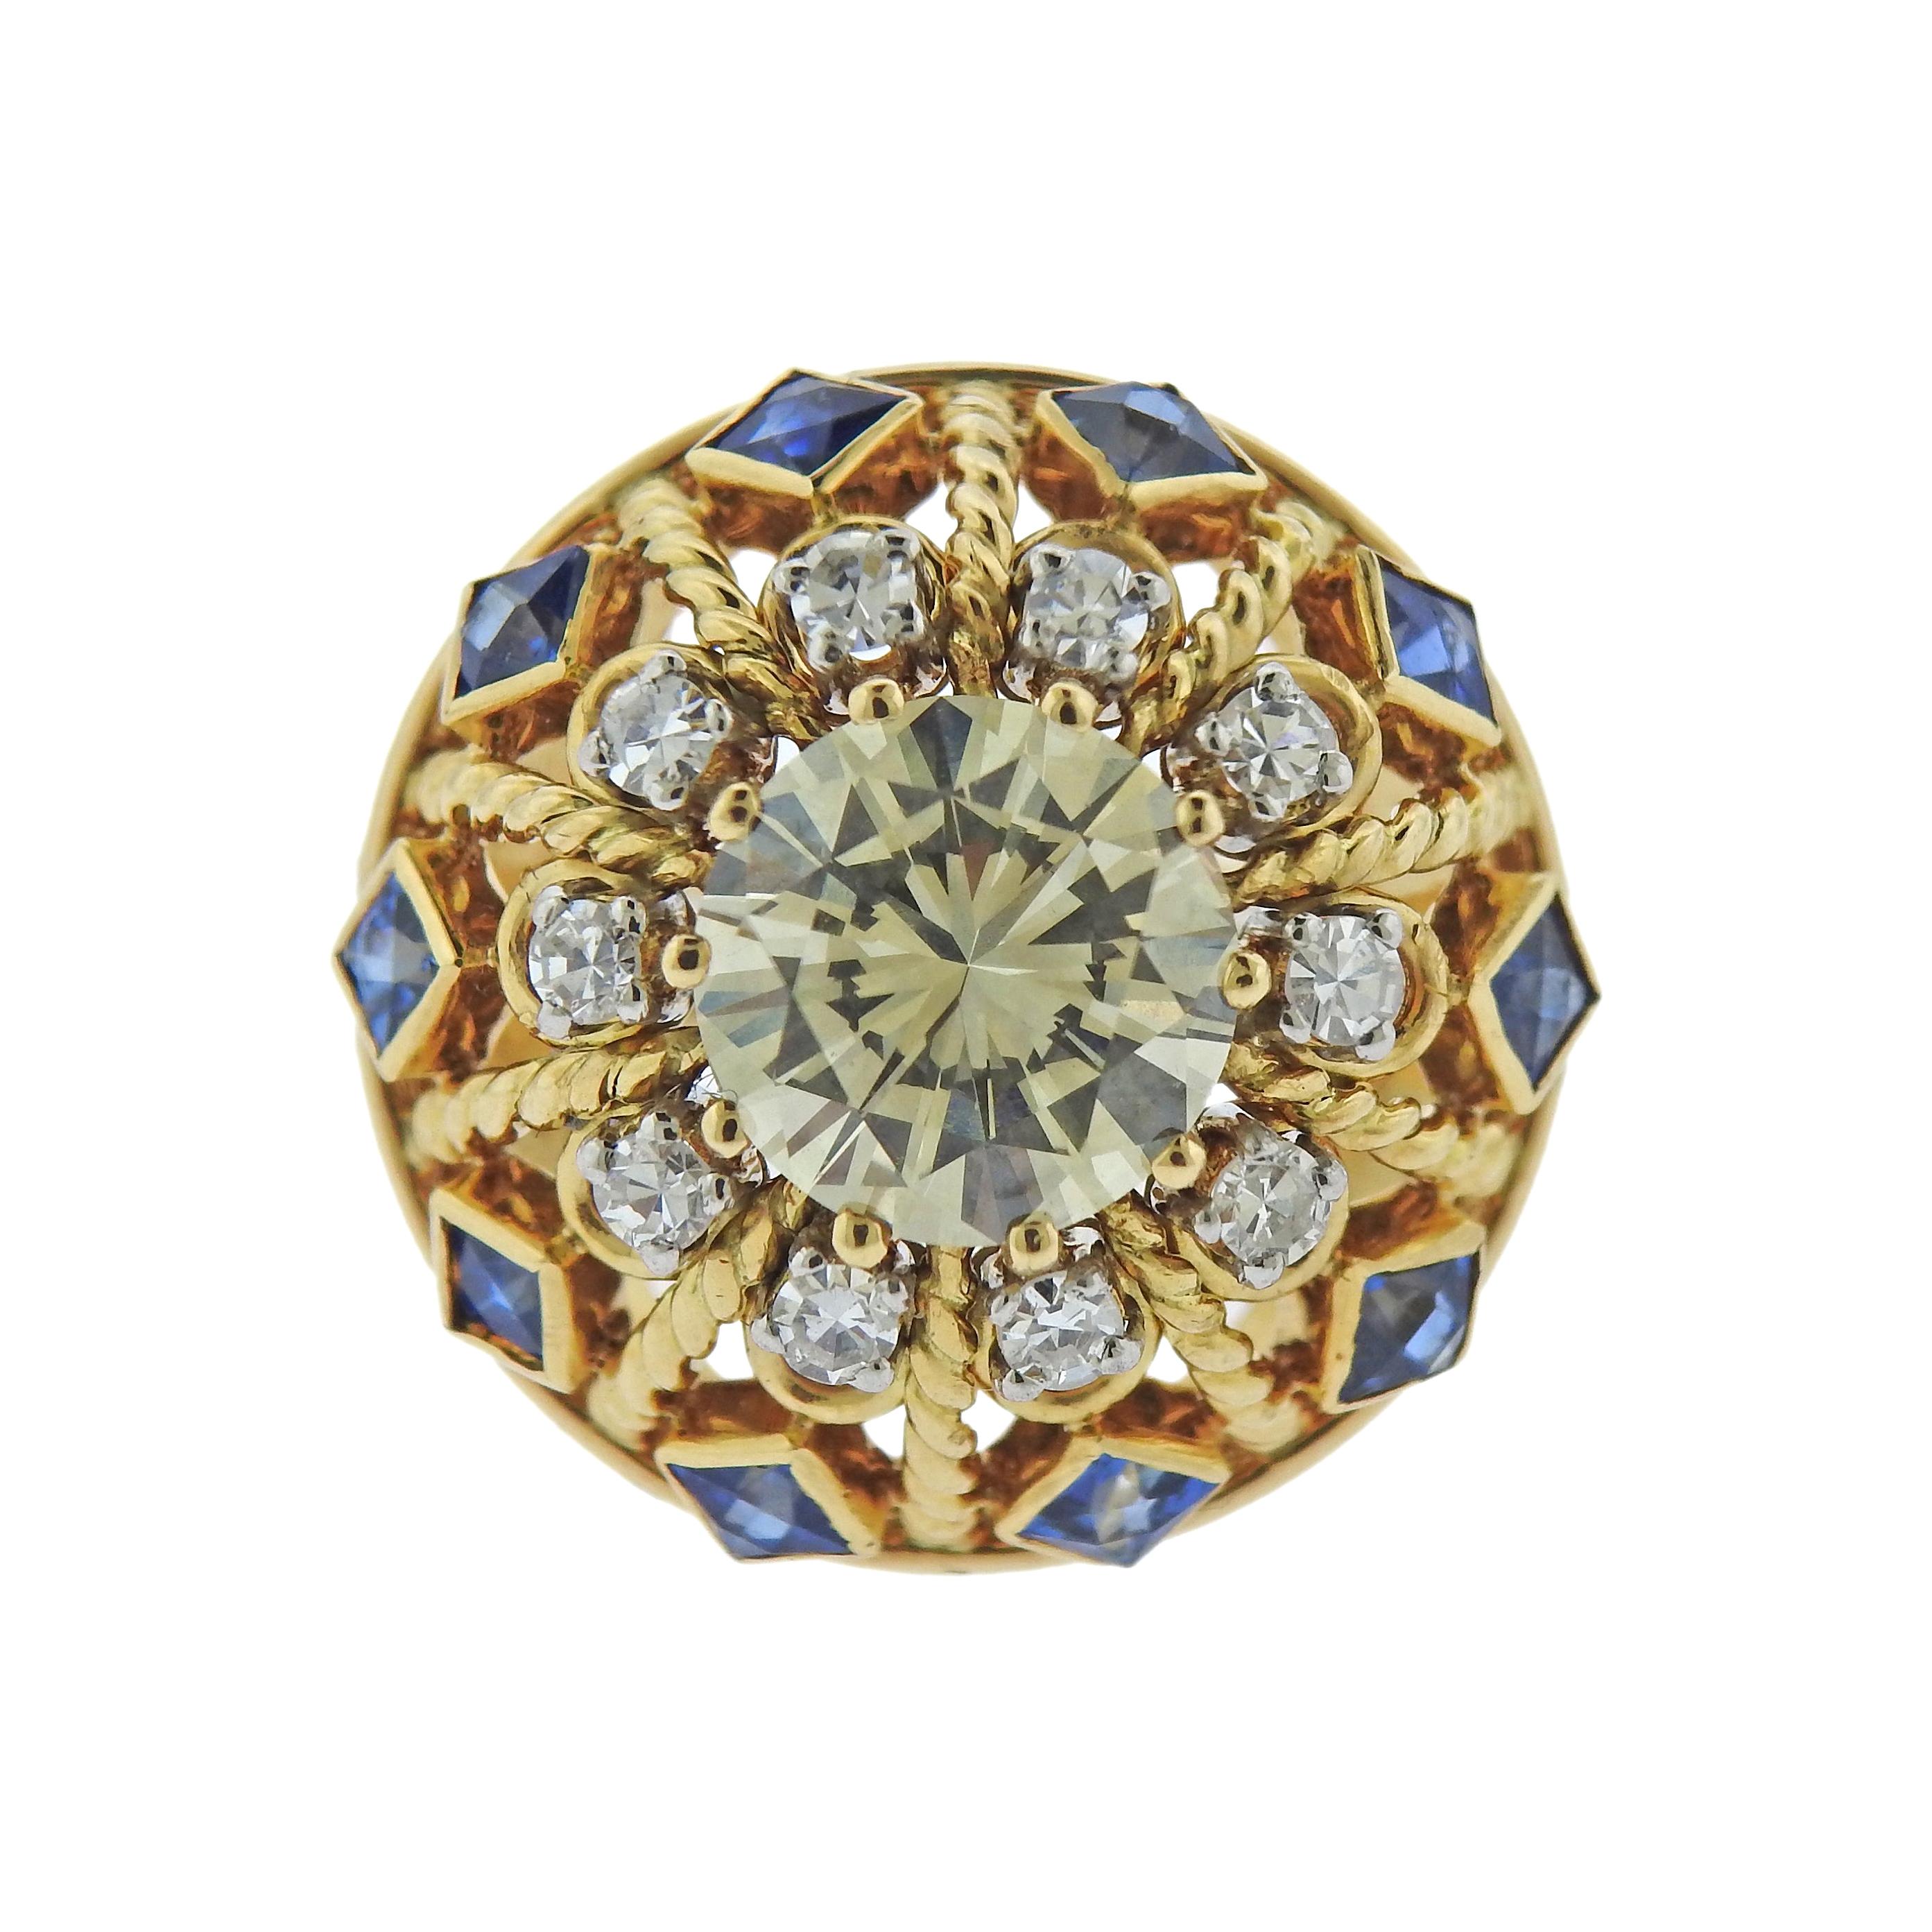 3.02 Carat Diamond Sapphire Gold Ring